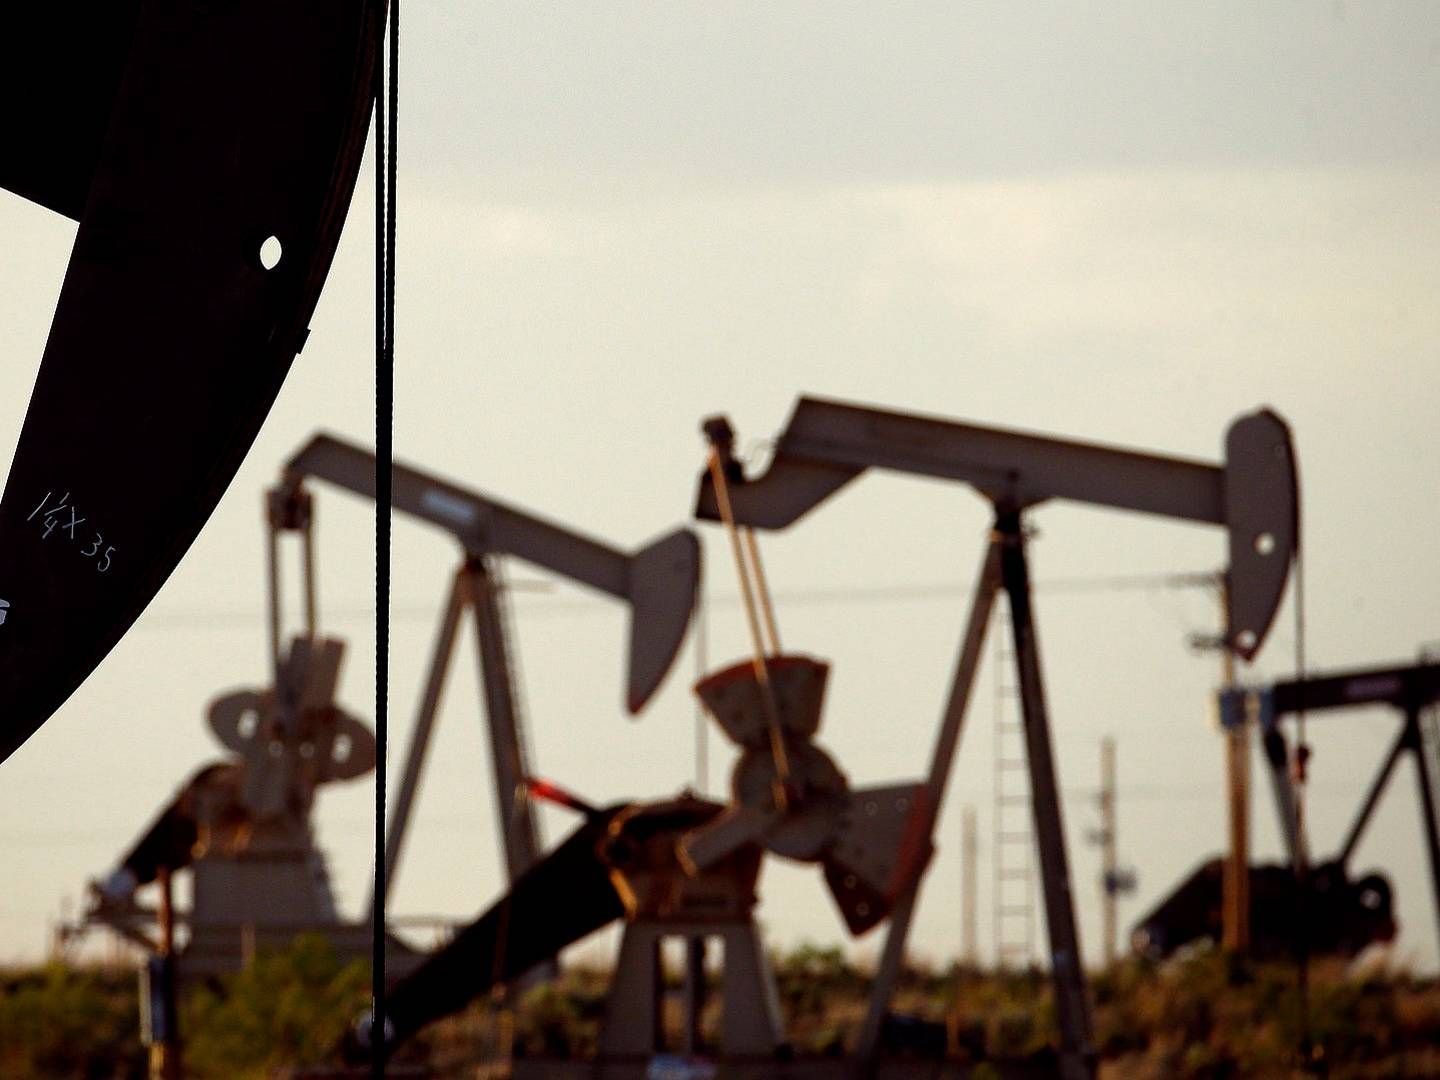 De store olieproducenter har haft svære kår de seneste måneder, men nu kan kommende prisstigninger måske igen være med til at skubbe gang i forretningen for selskaberne. | Foto: Charlie Riedel / AP / Ritzau Scanpix